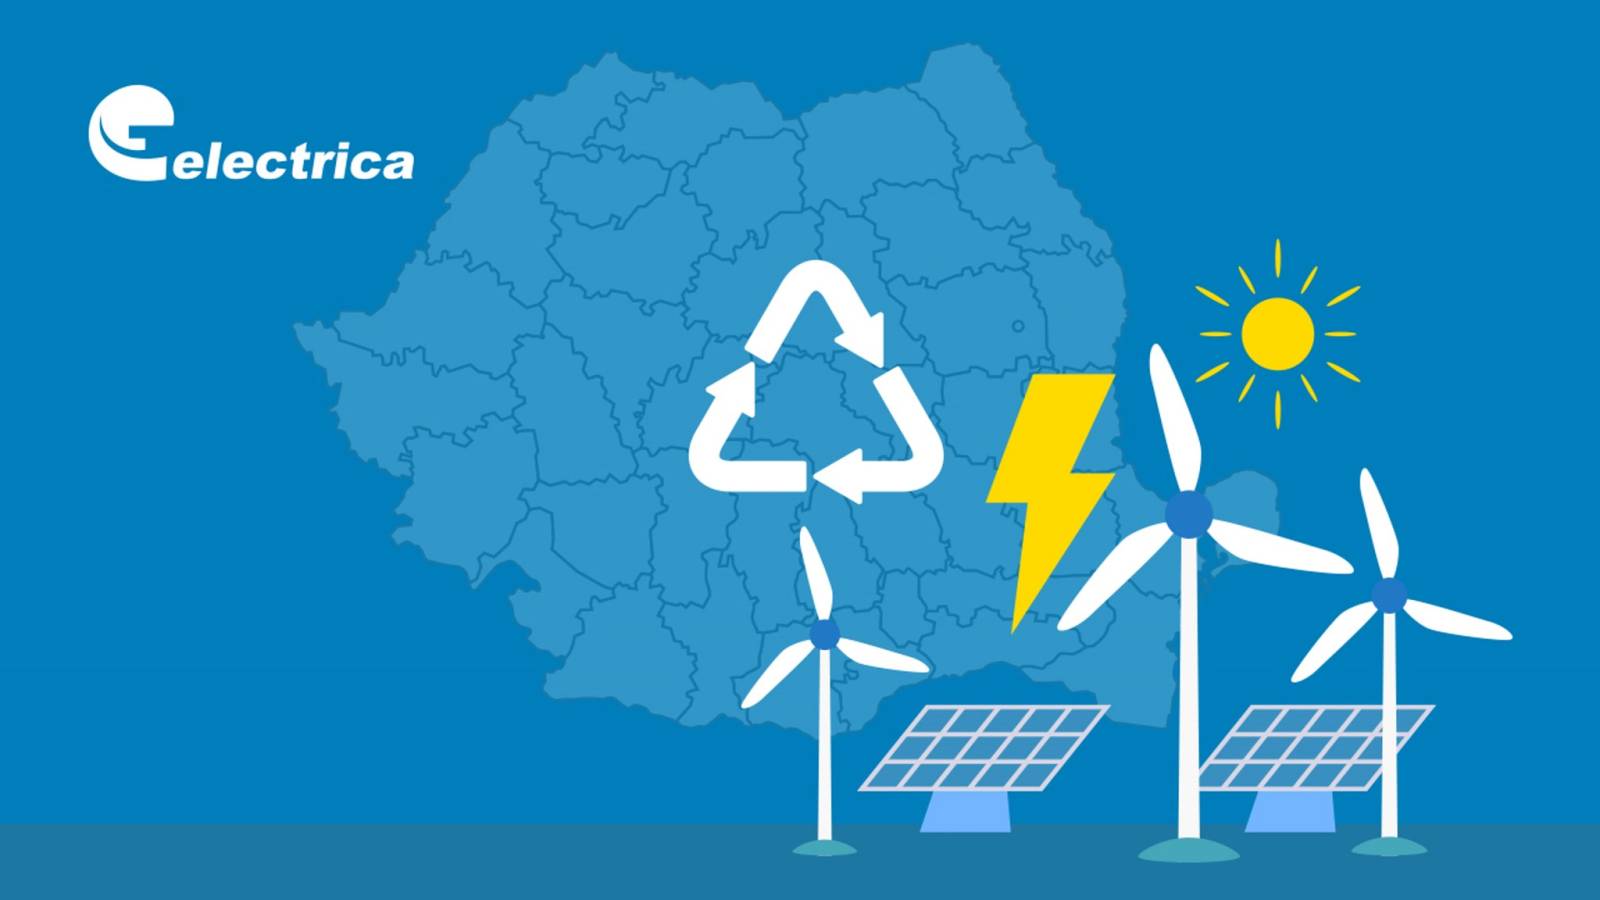 Officiële kennisgeving van Electrica BELANGRIJKE LAST MINUTE-informatie voor Roemeense klanten